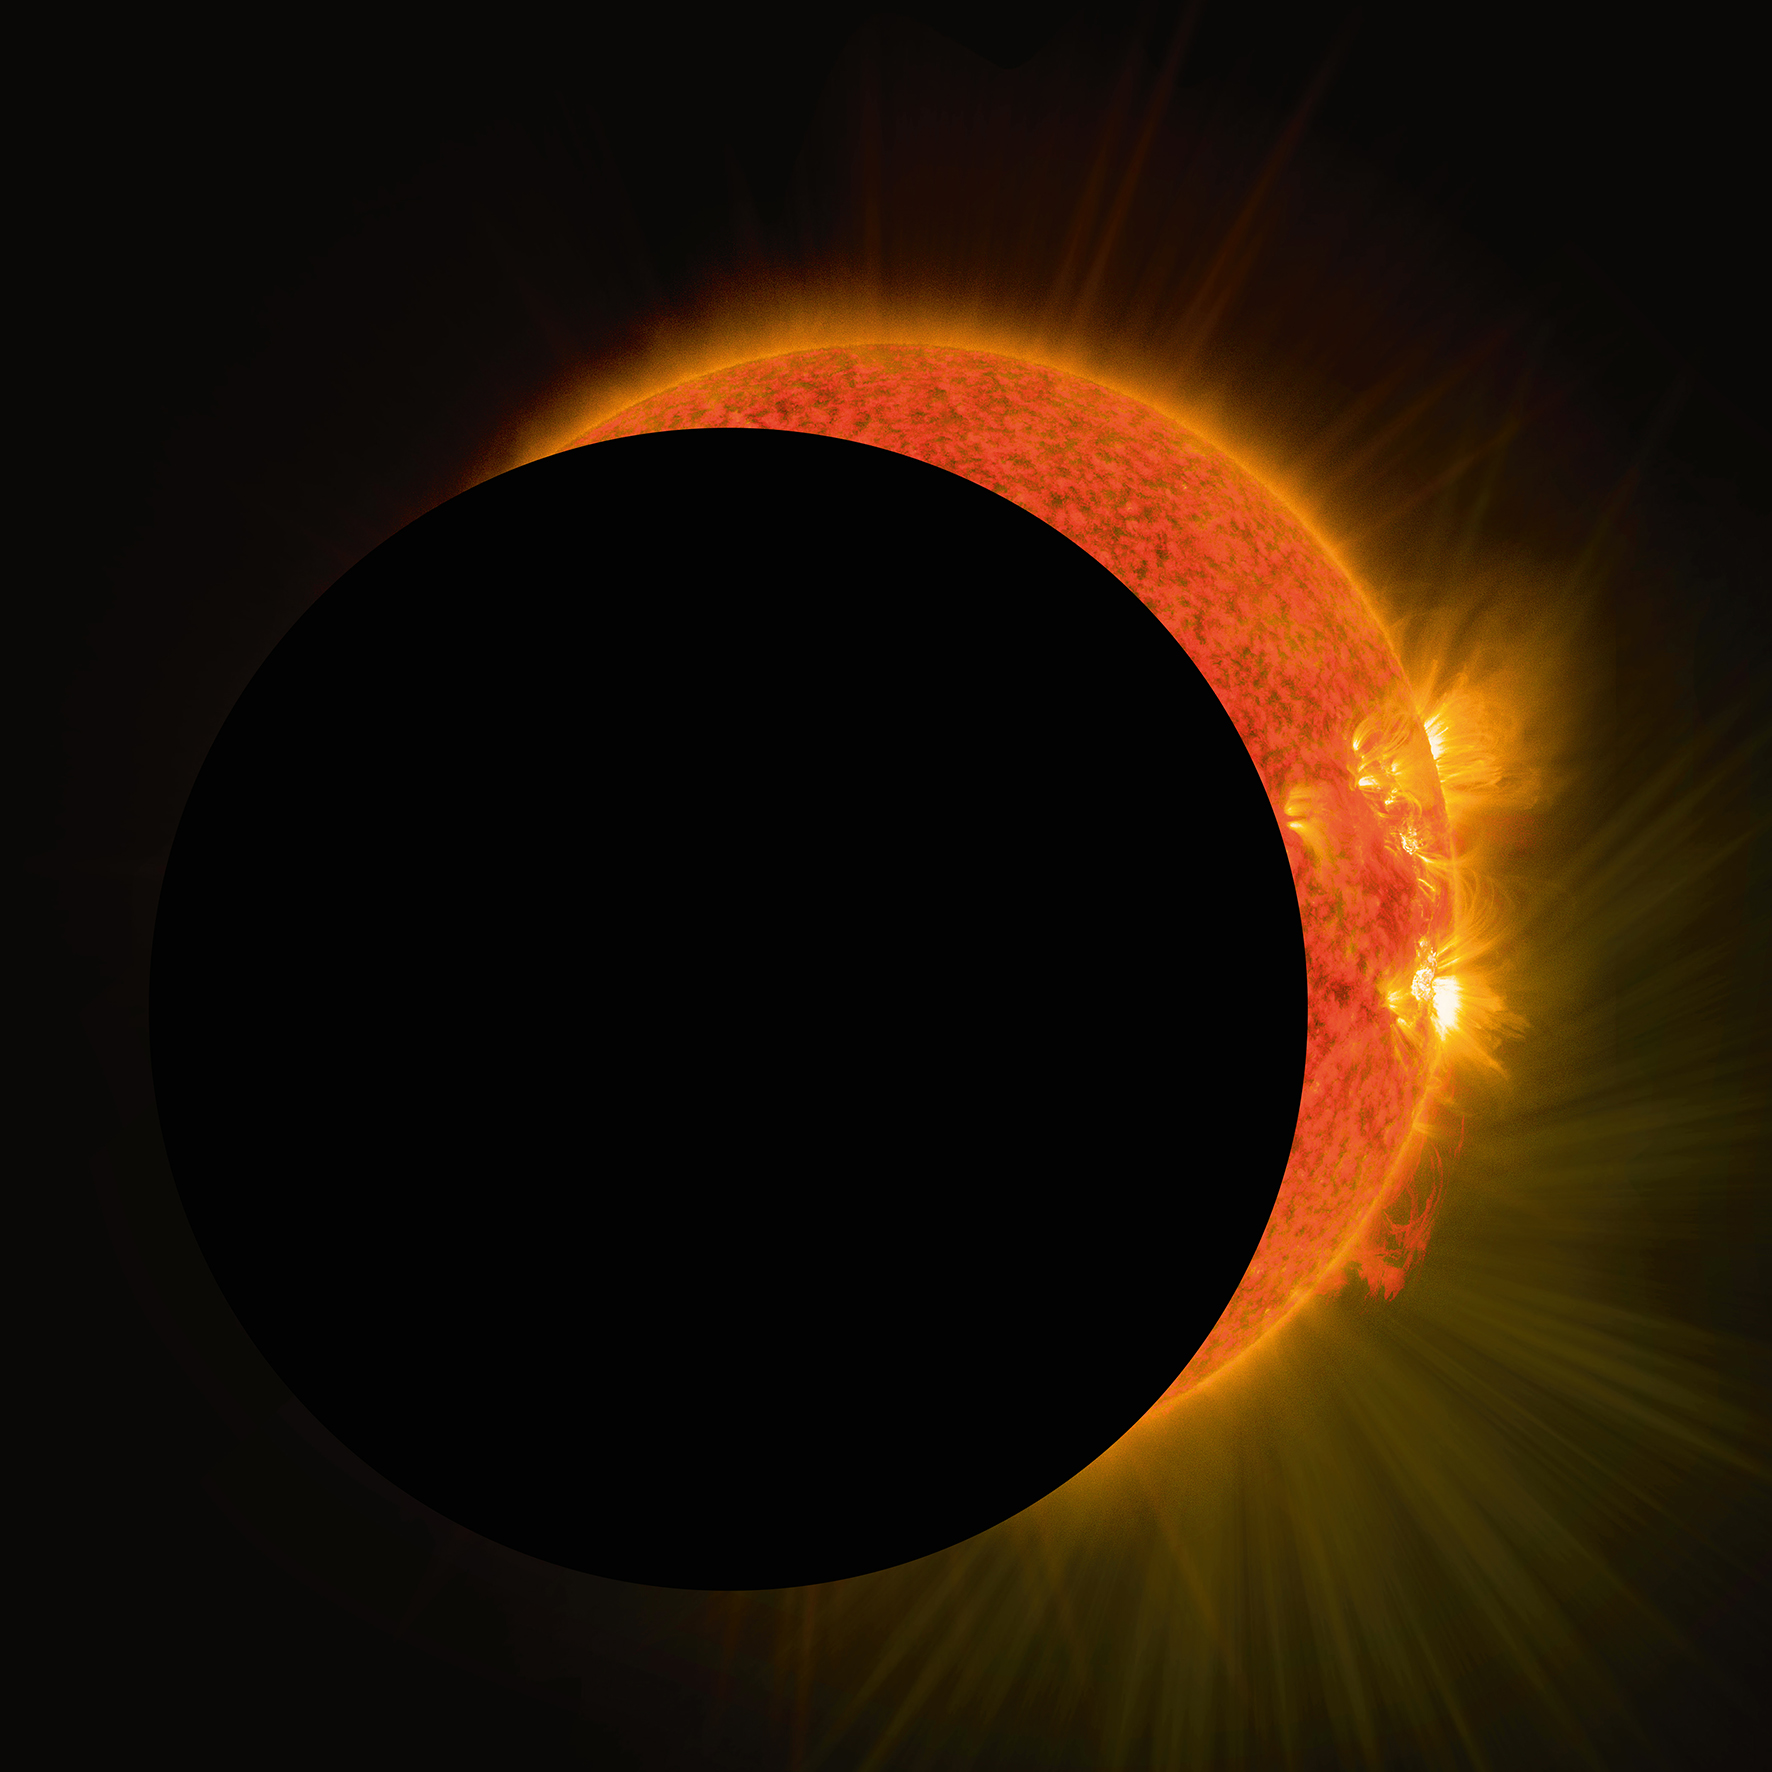 Eclipse de Soleil